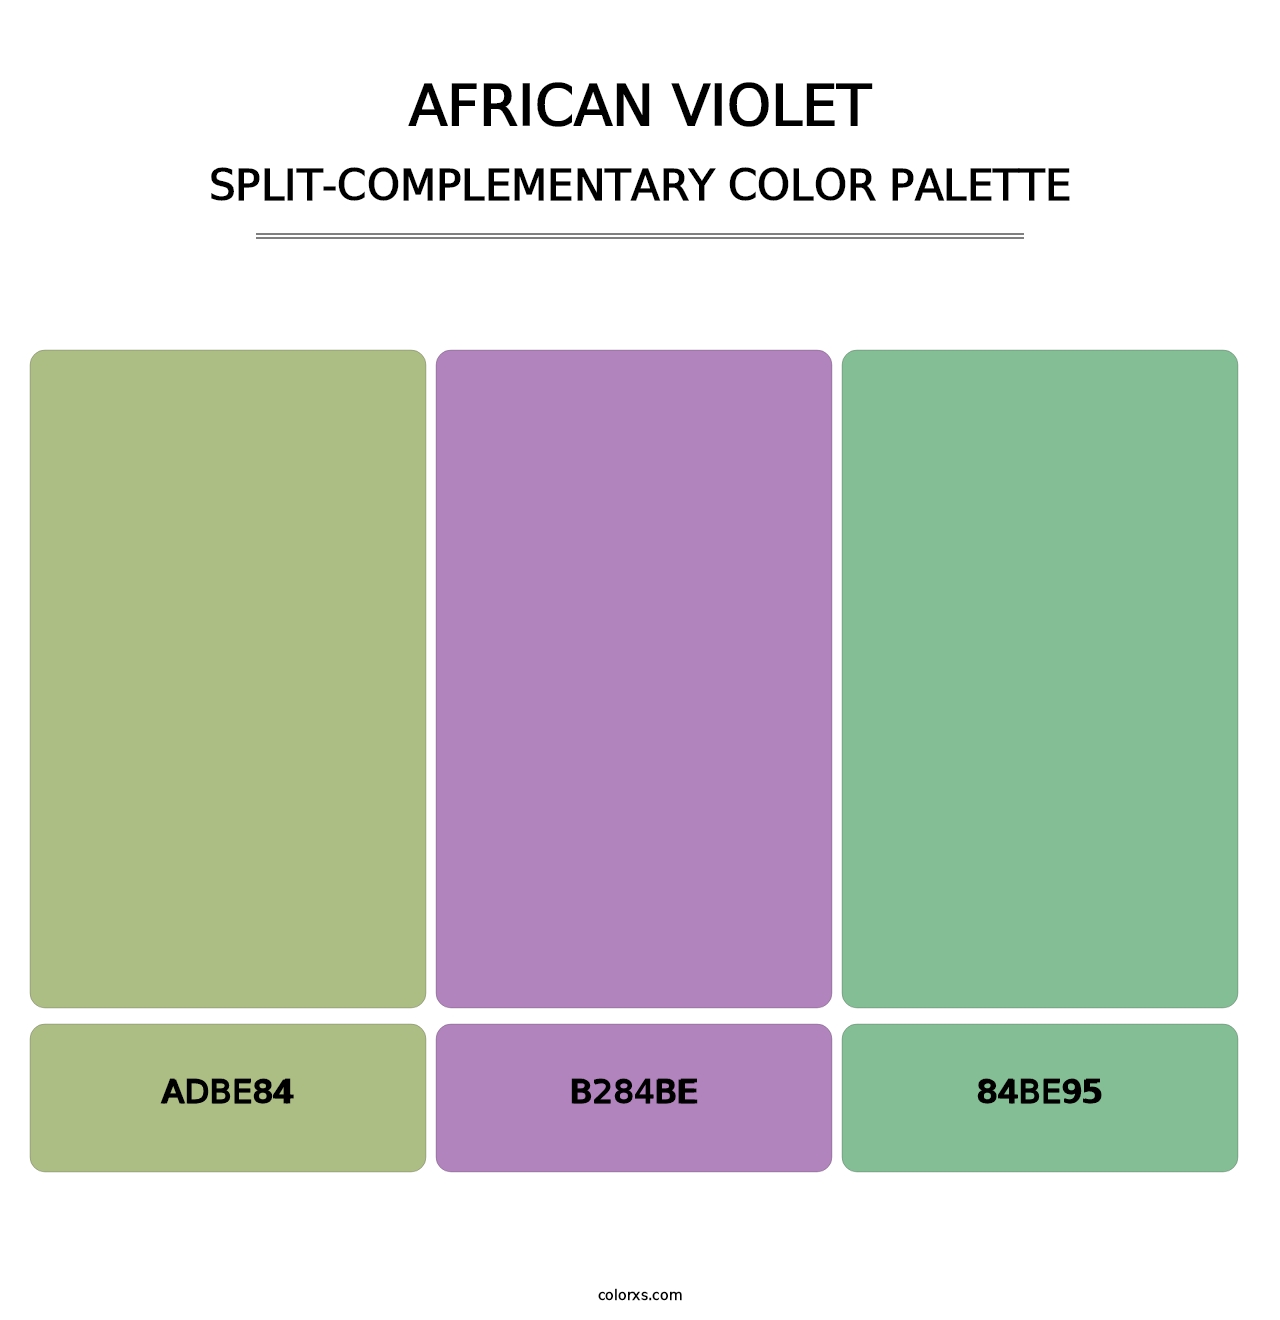 African Violet - Split-Complementary Color Palette